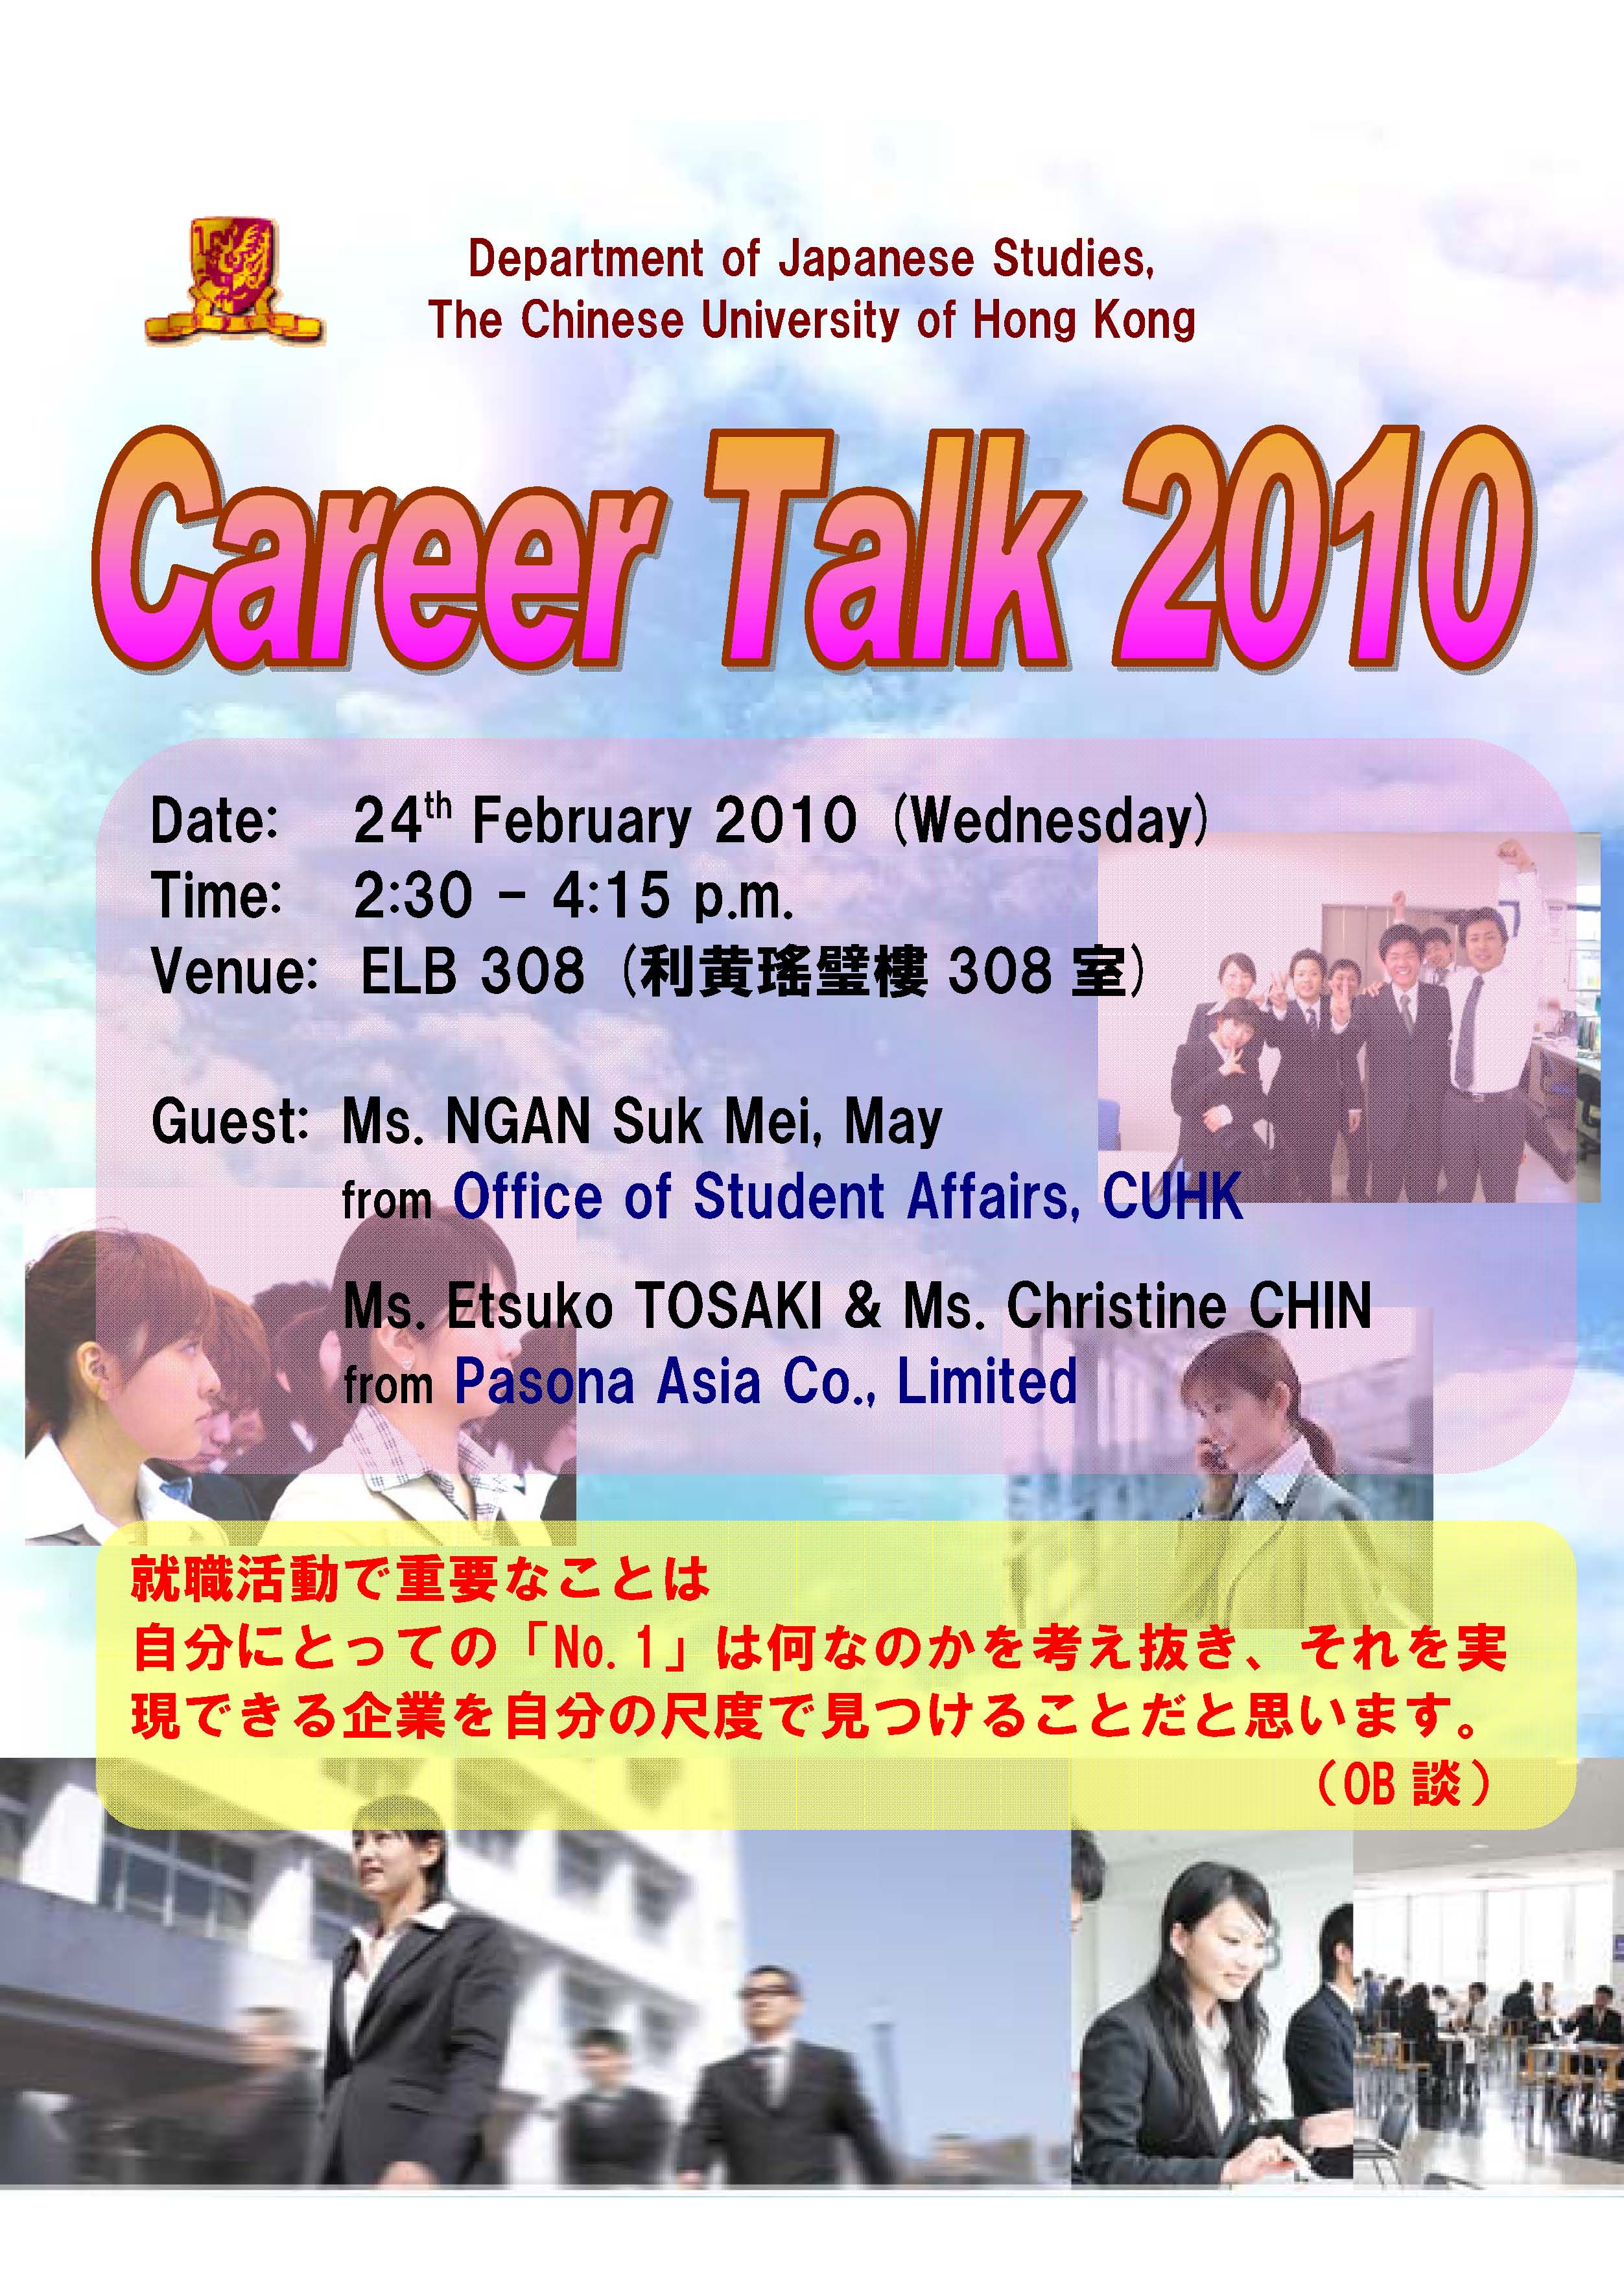 Career Talk 2010 | 香港中文大學 日本研究學系